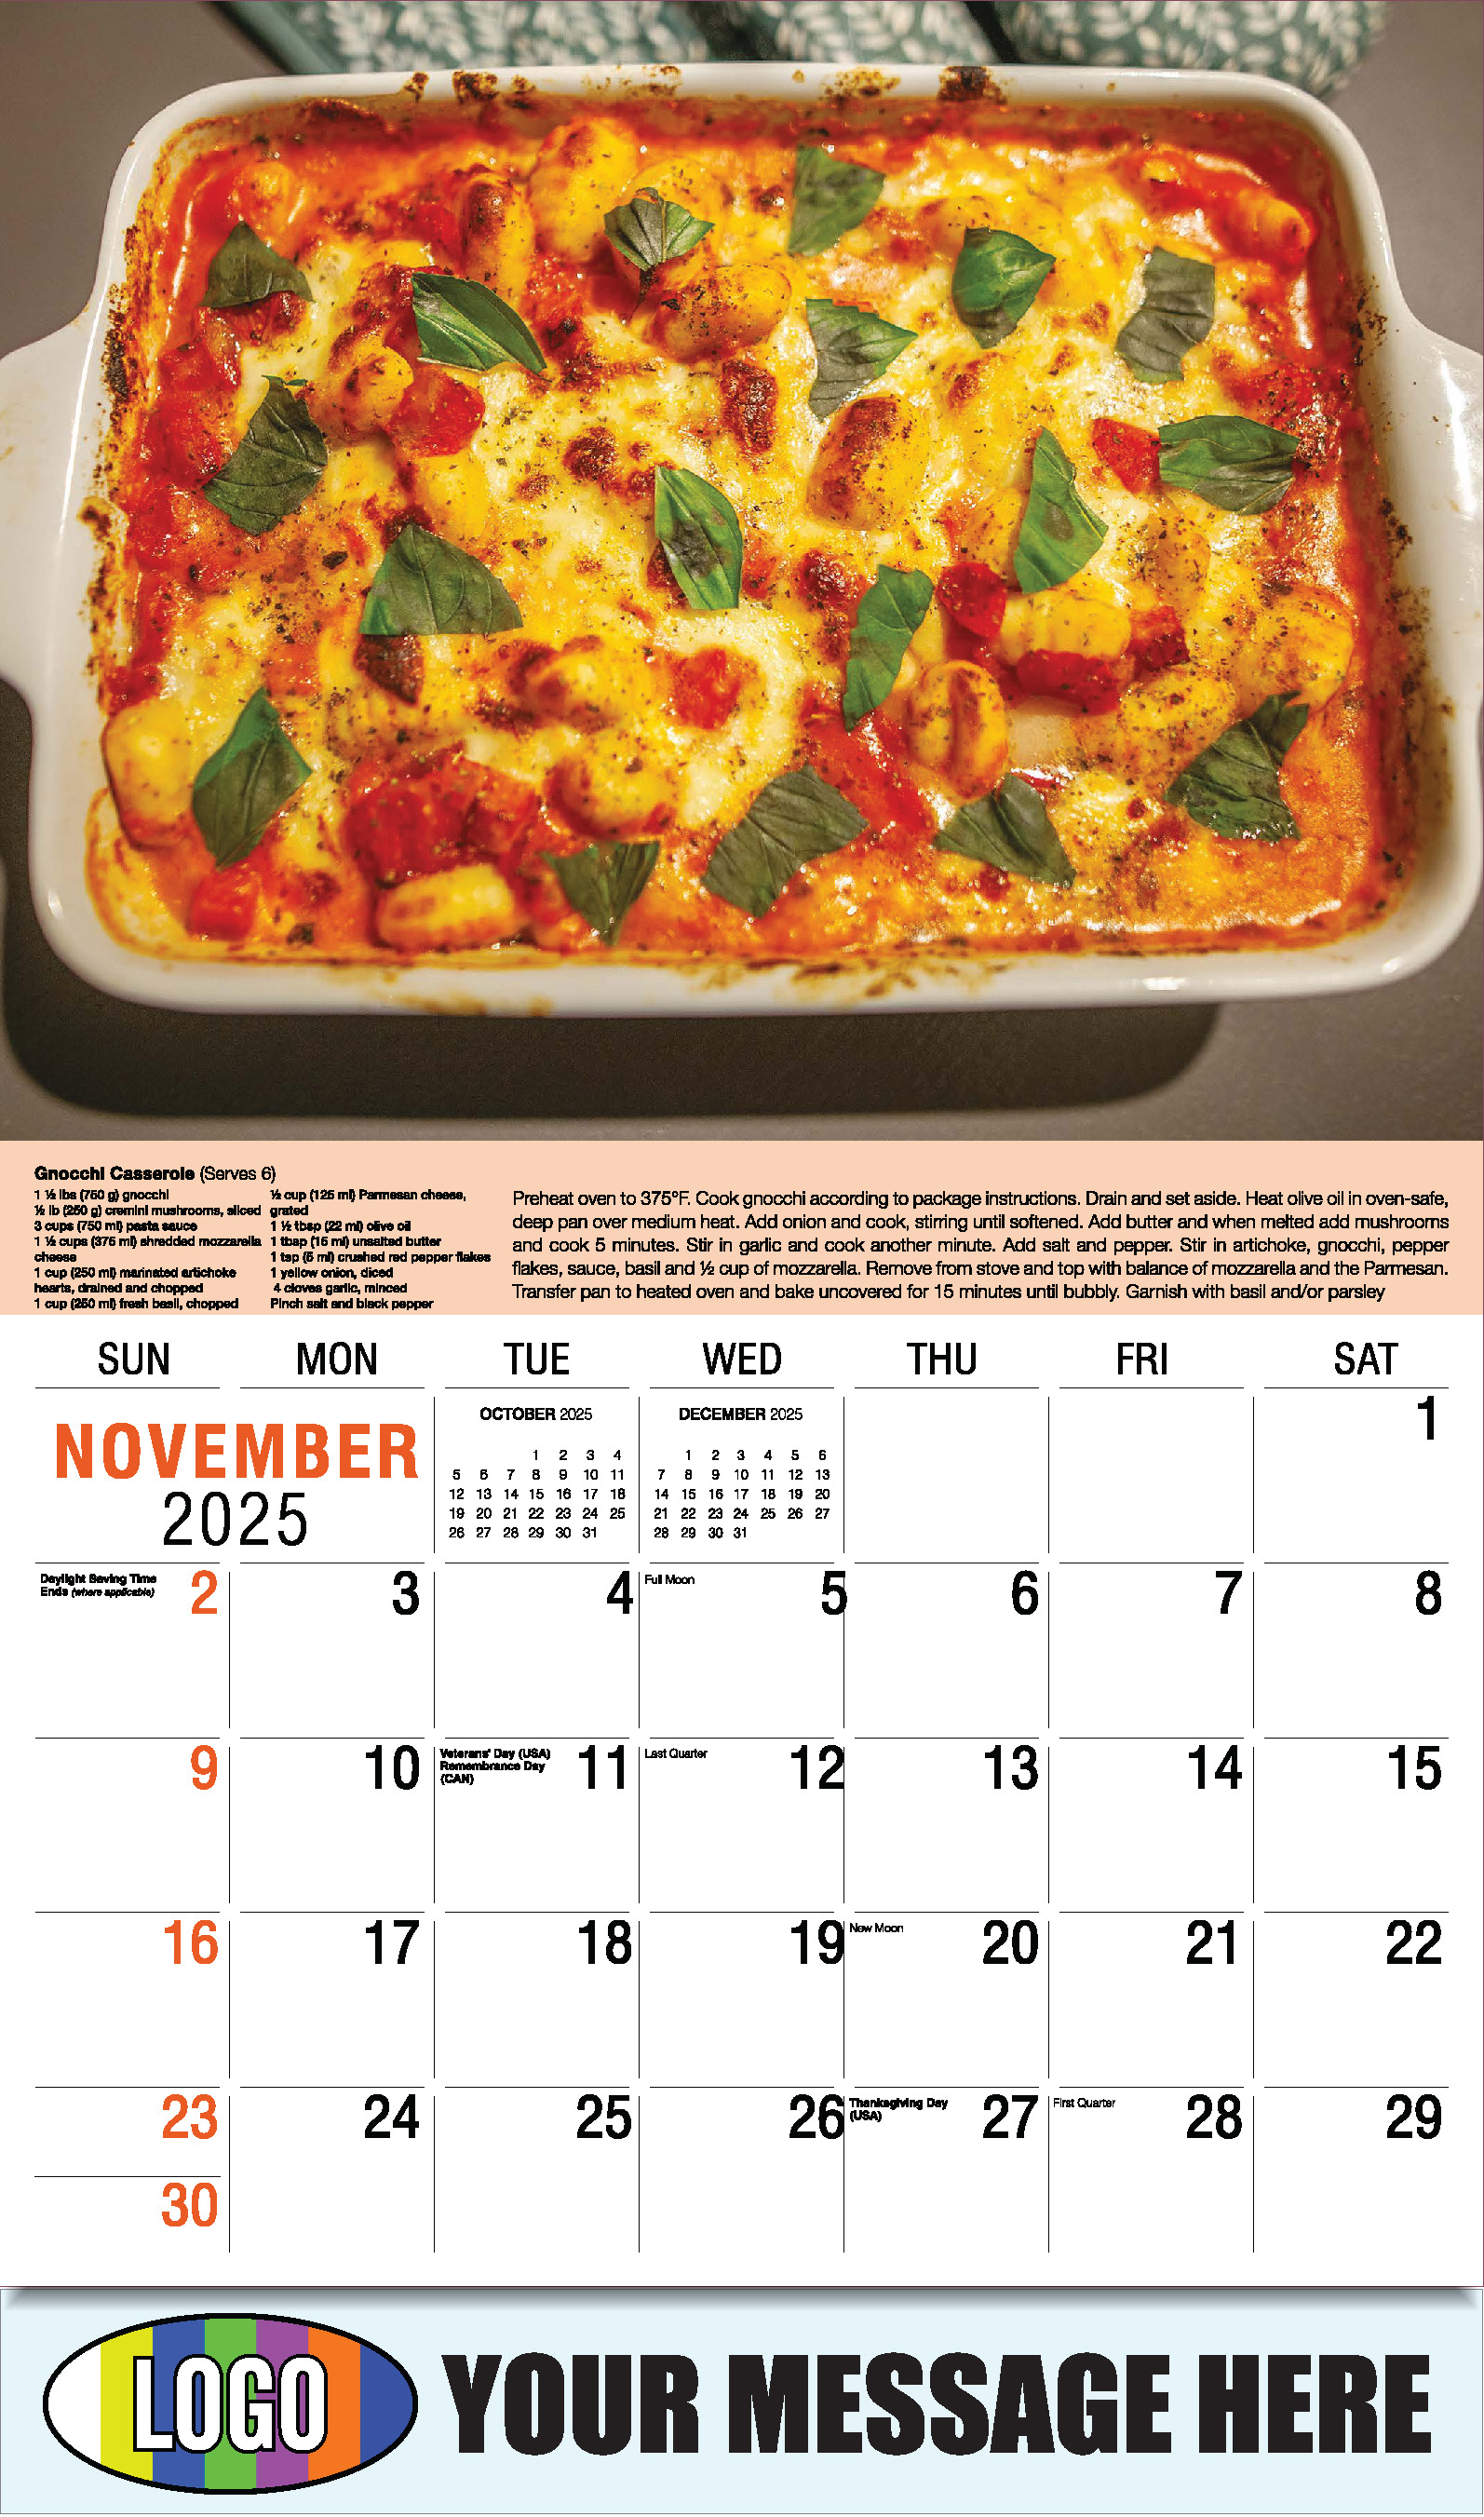 Recipes 2025 Business Promotional Calendar - November